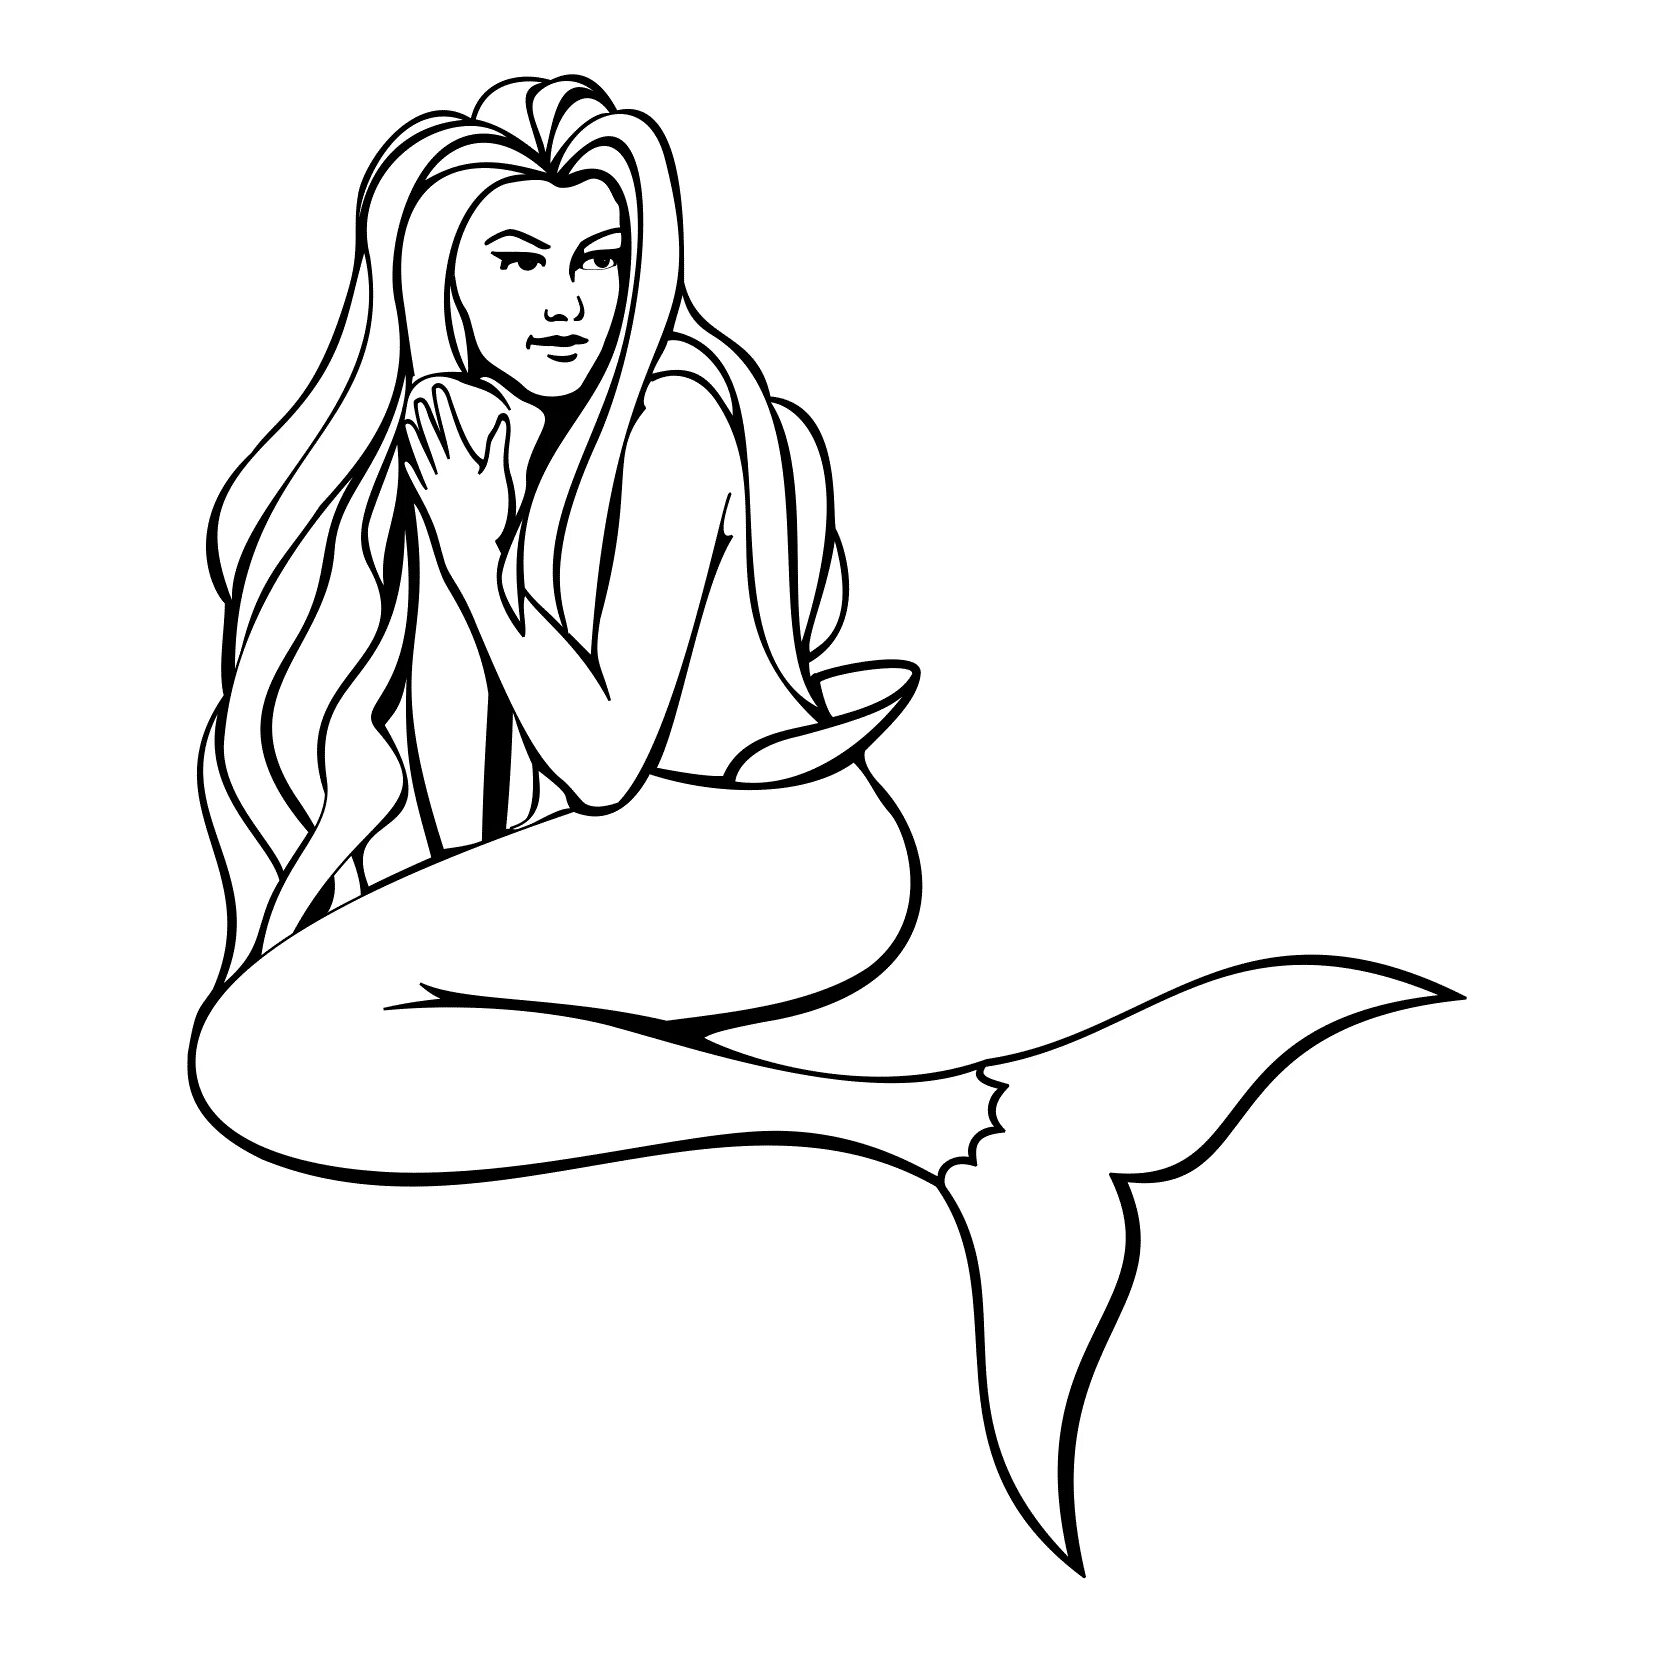 Poetic coloring drawing of a mermaid